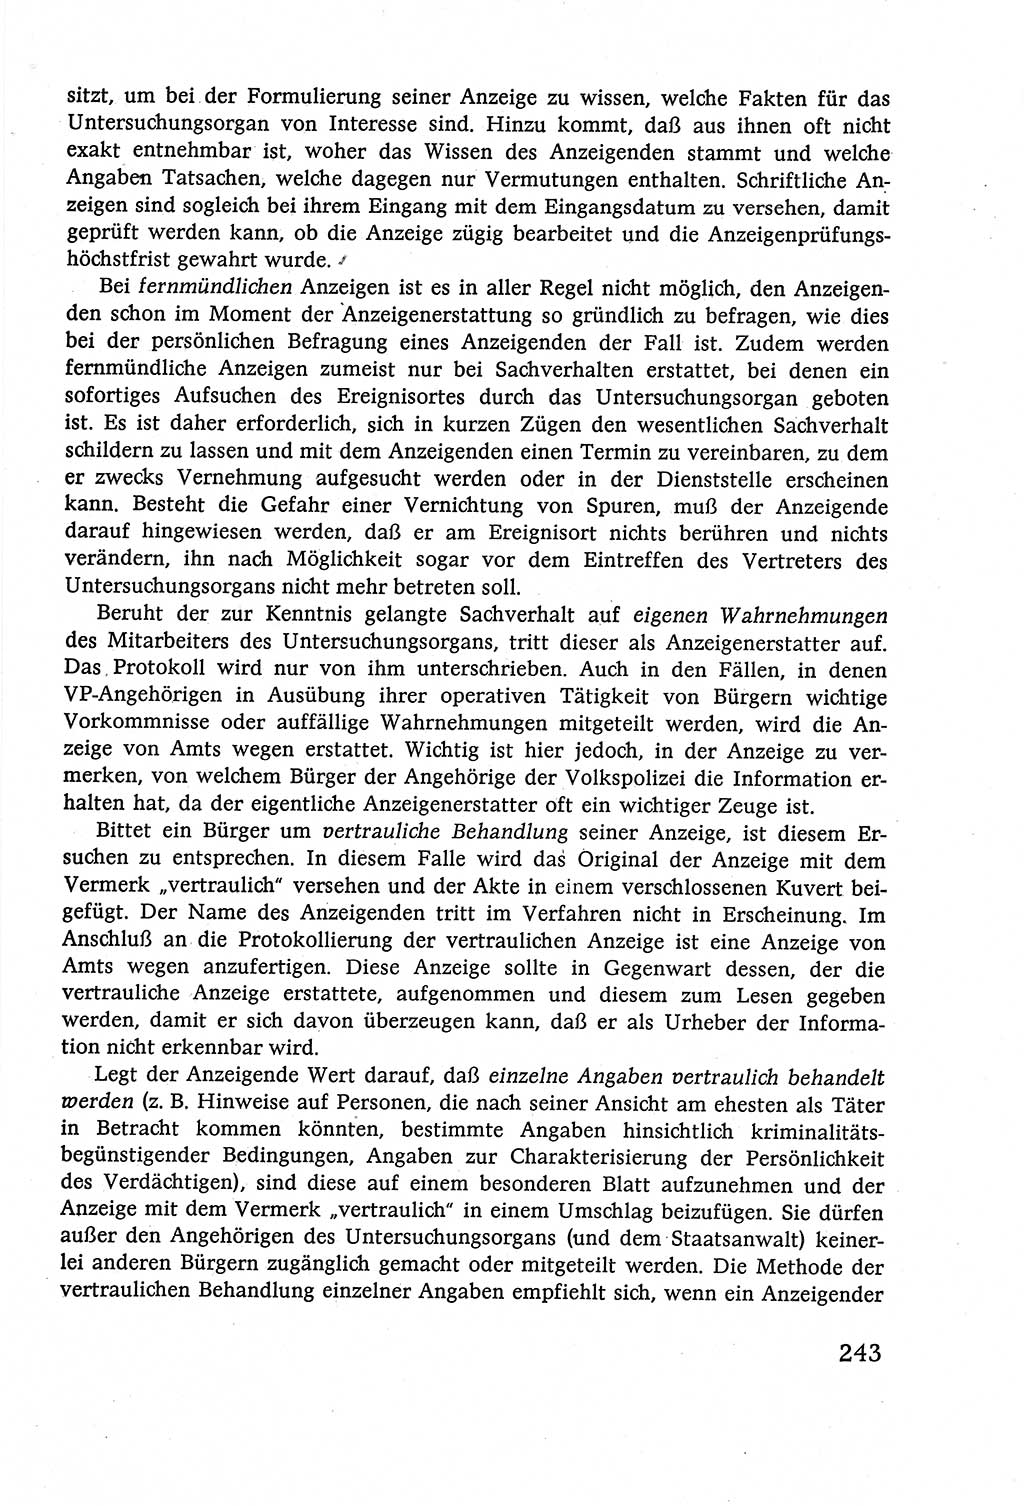 Strafverfahrensrecht [Deutsche Demokratische Republik (DDR)], Lehrbuch 1977, Seite 243 (Strafverf.-R. DDR Lb. 1977, S. 243)